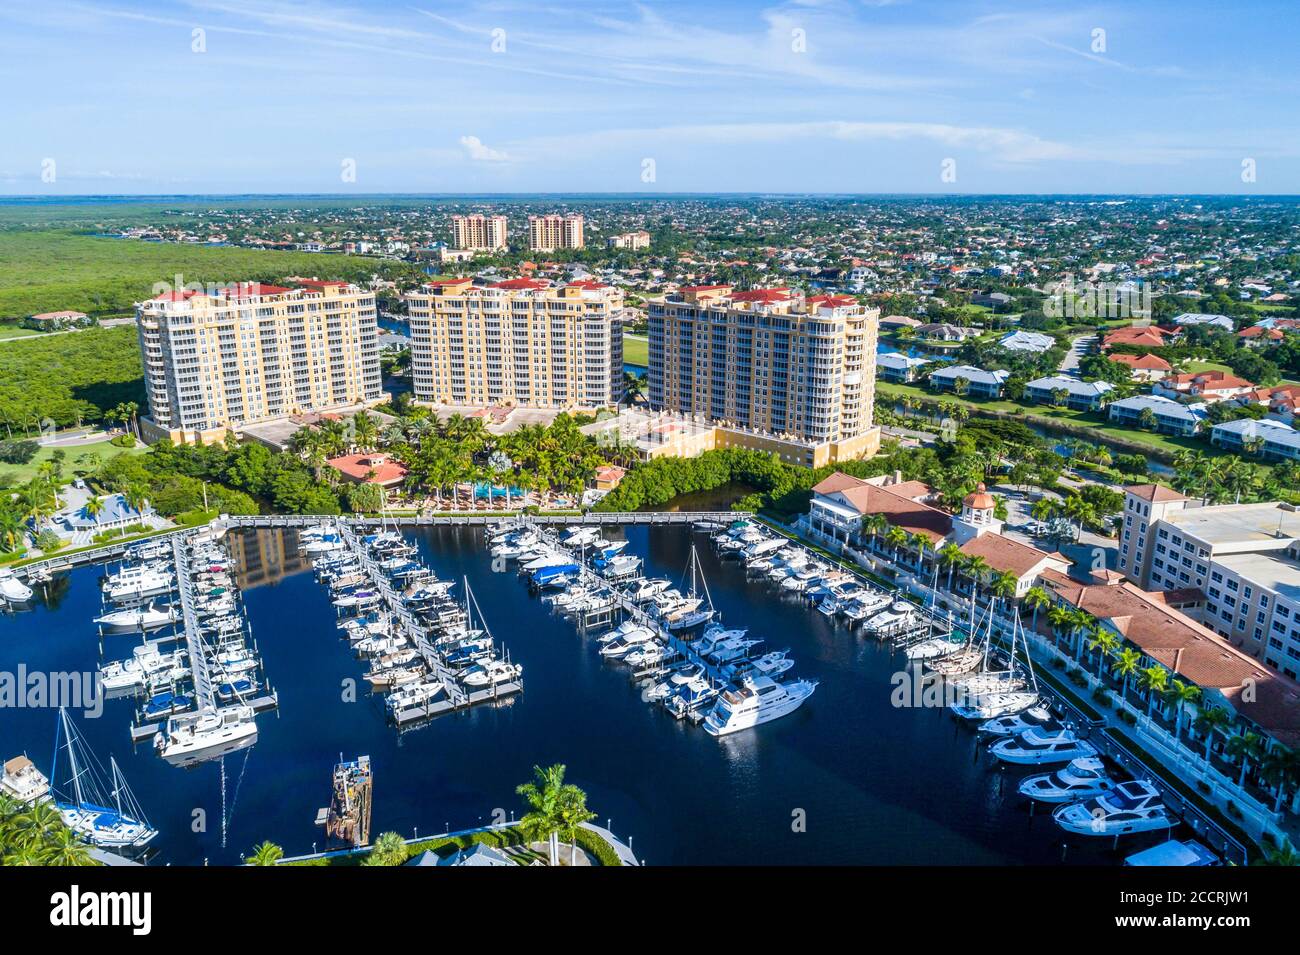 Cape Coral Florida, le Westin Cape Coral Resort à Marina Village, Tarpon point Marina Luxury Condominiums, docks, bateaux, vue aérienne sur les oiseaux Banque D'Images